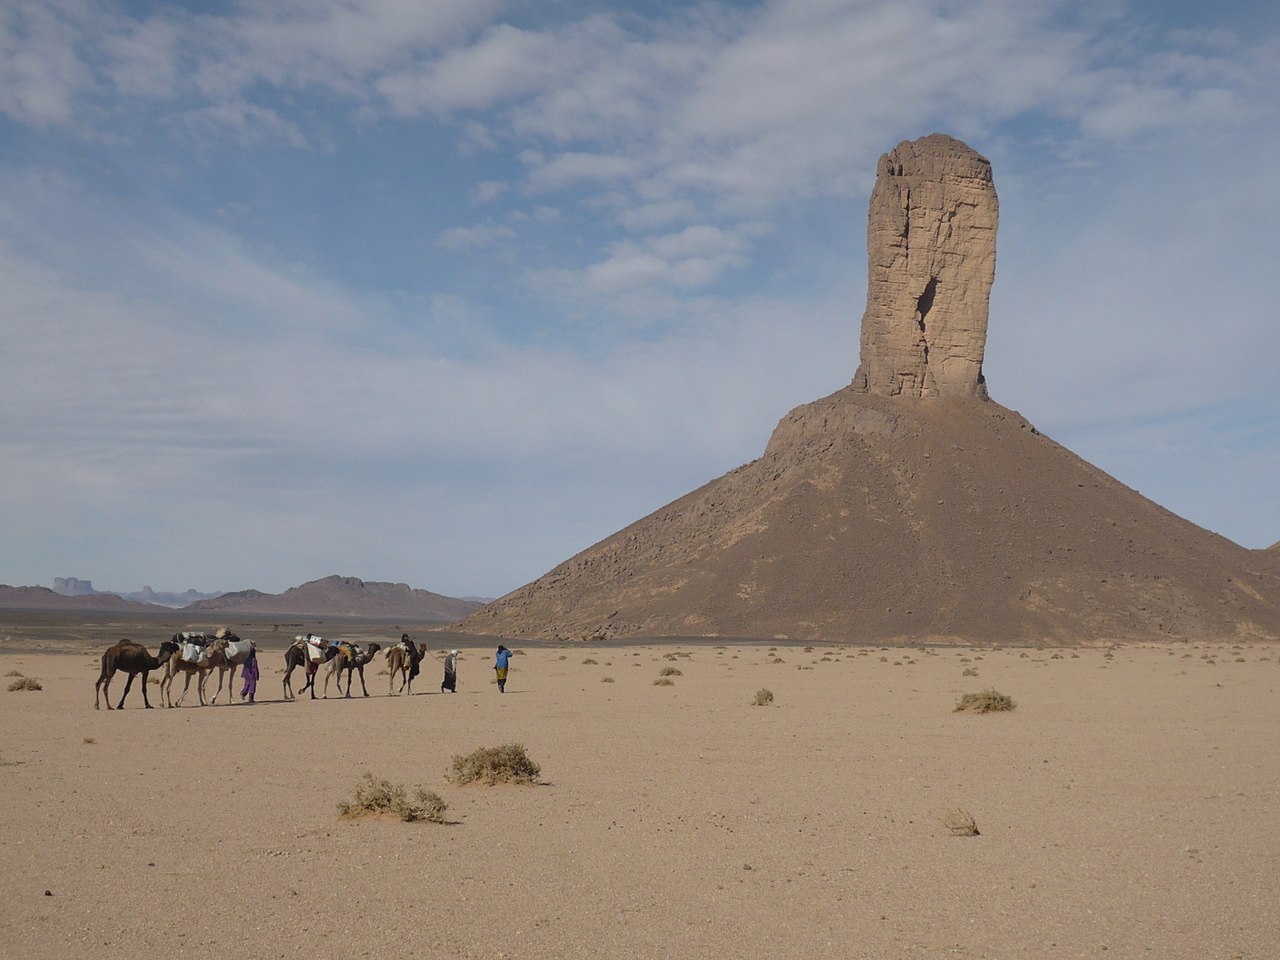 Ostanets ใน Sahara สร้างขึ้นโดยผุกร่อนหิน